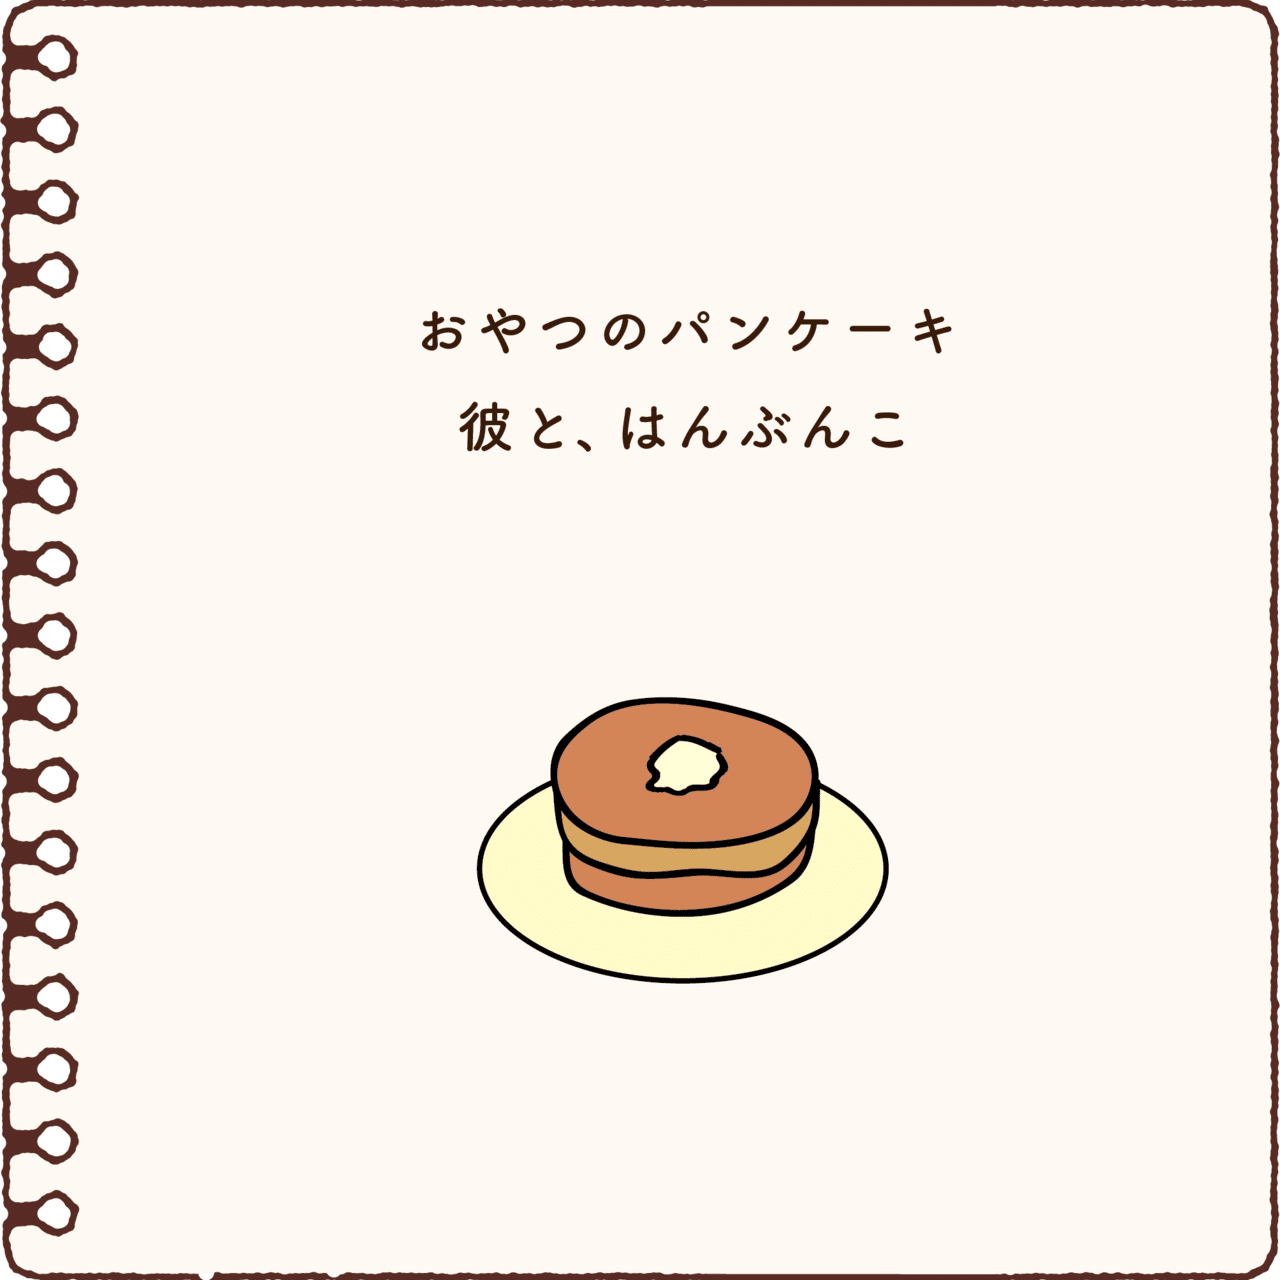 パンケーキの絵本 秋山 茂之 しげちゃん Note